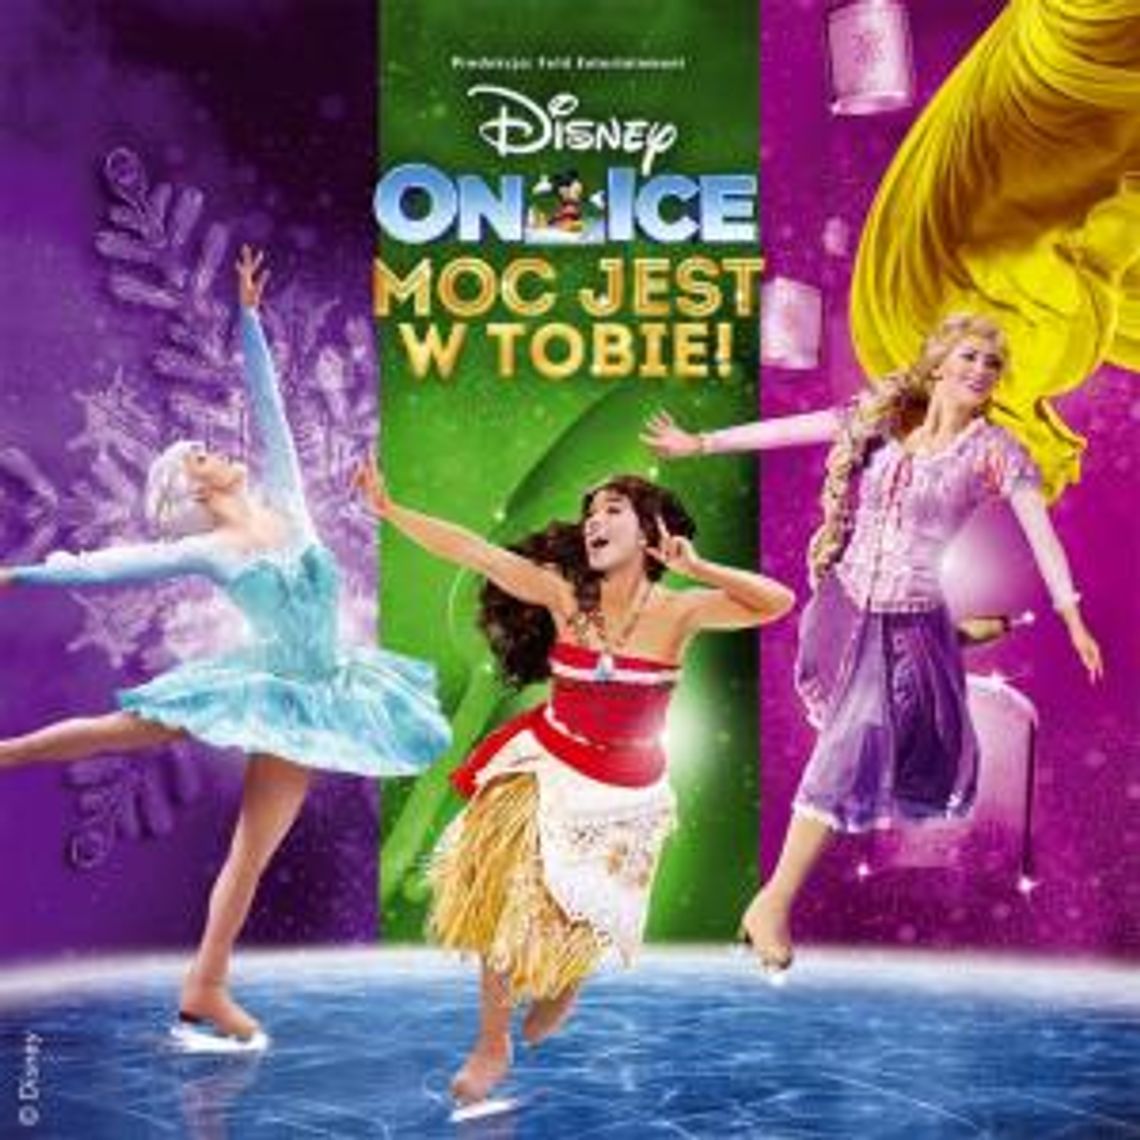 Disney On Ice: MOC JEST W TOBIE!